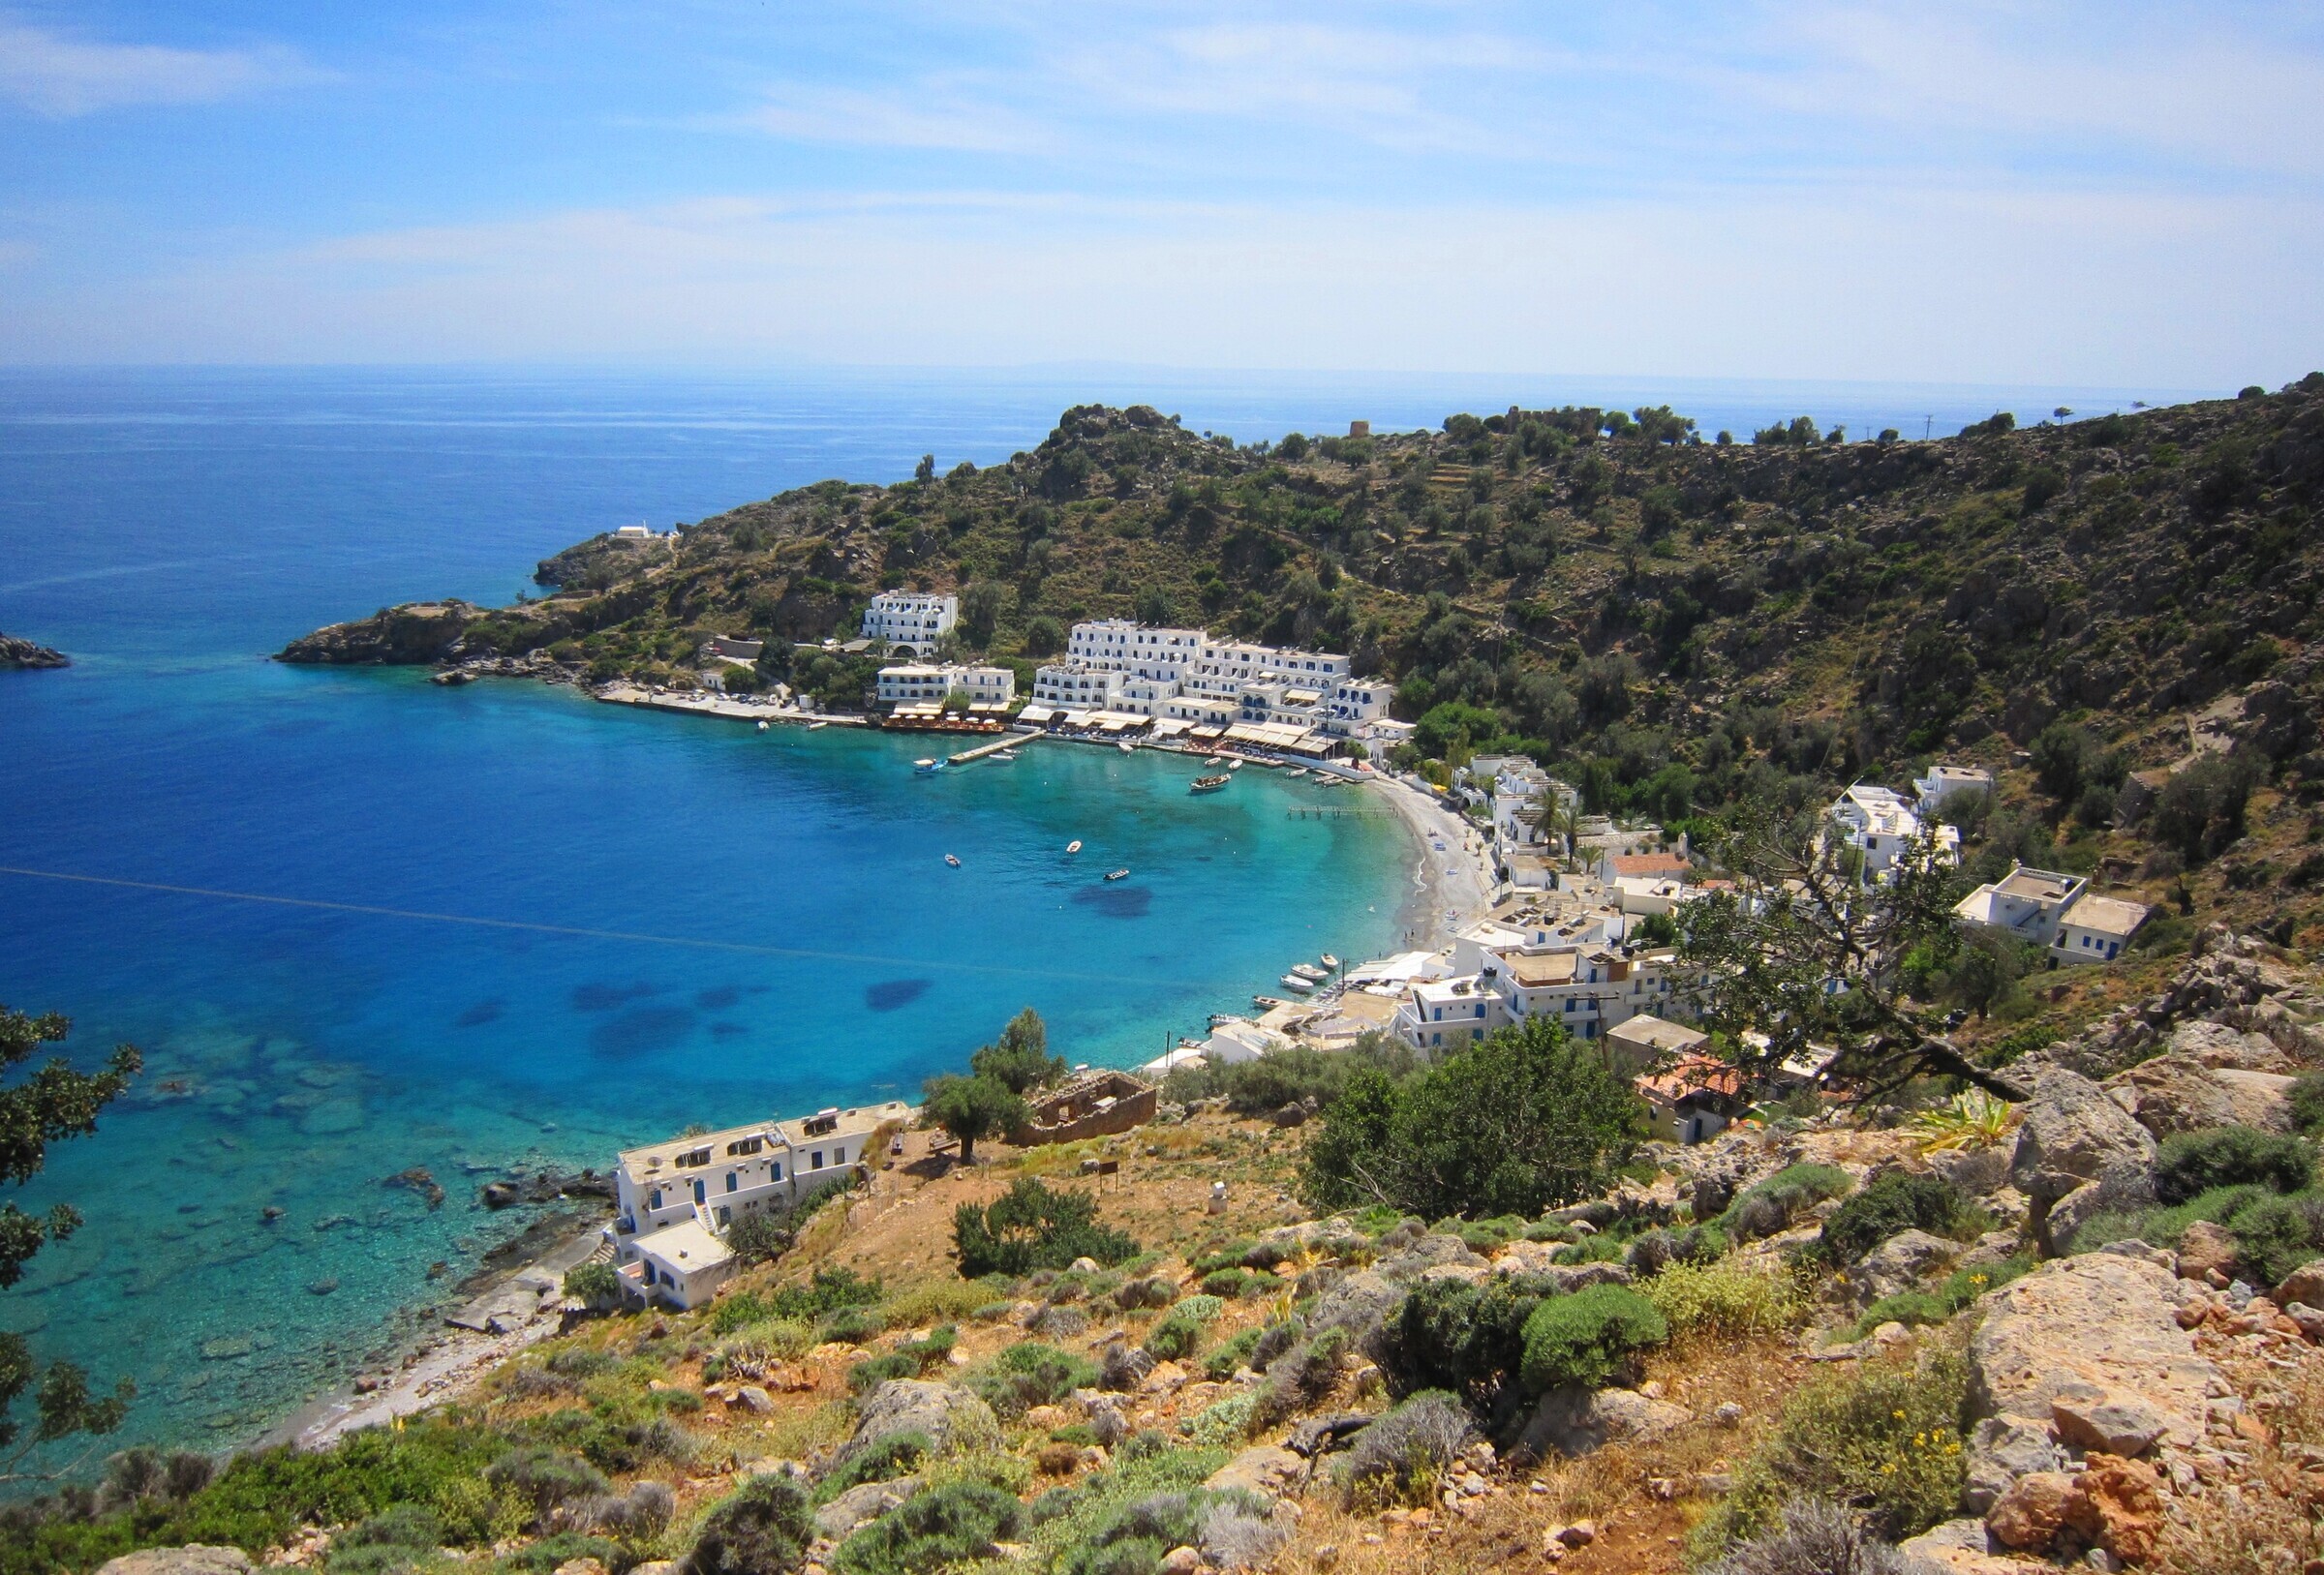 Греция нудиские пляжи